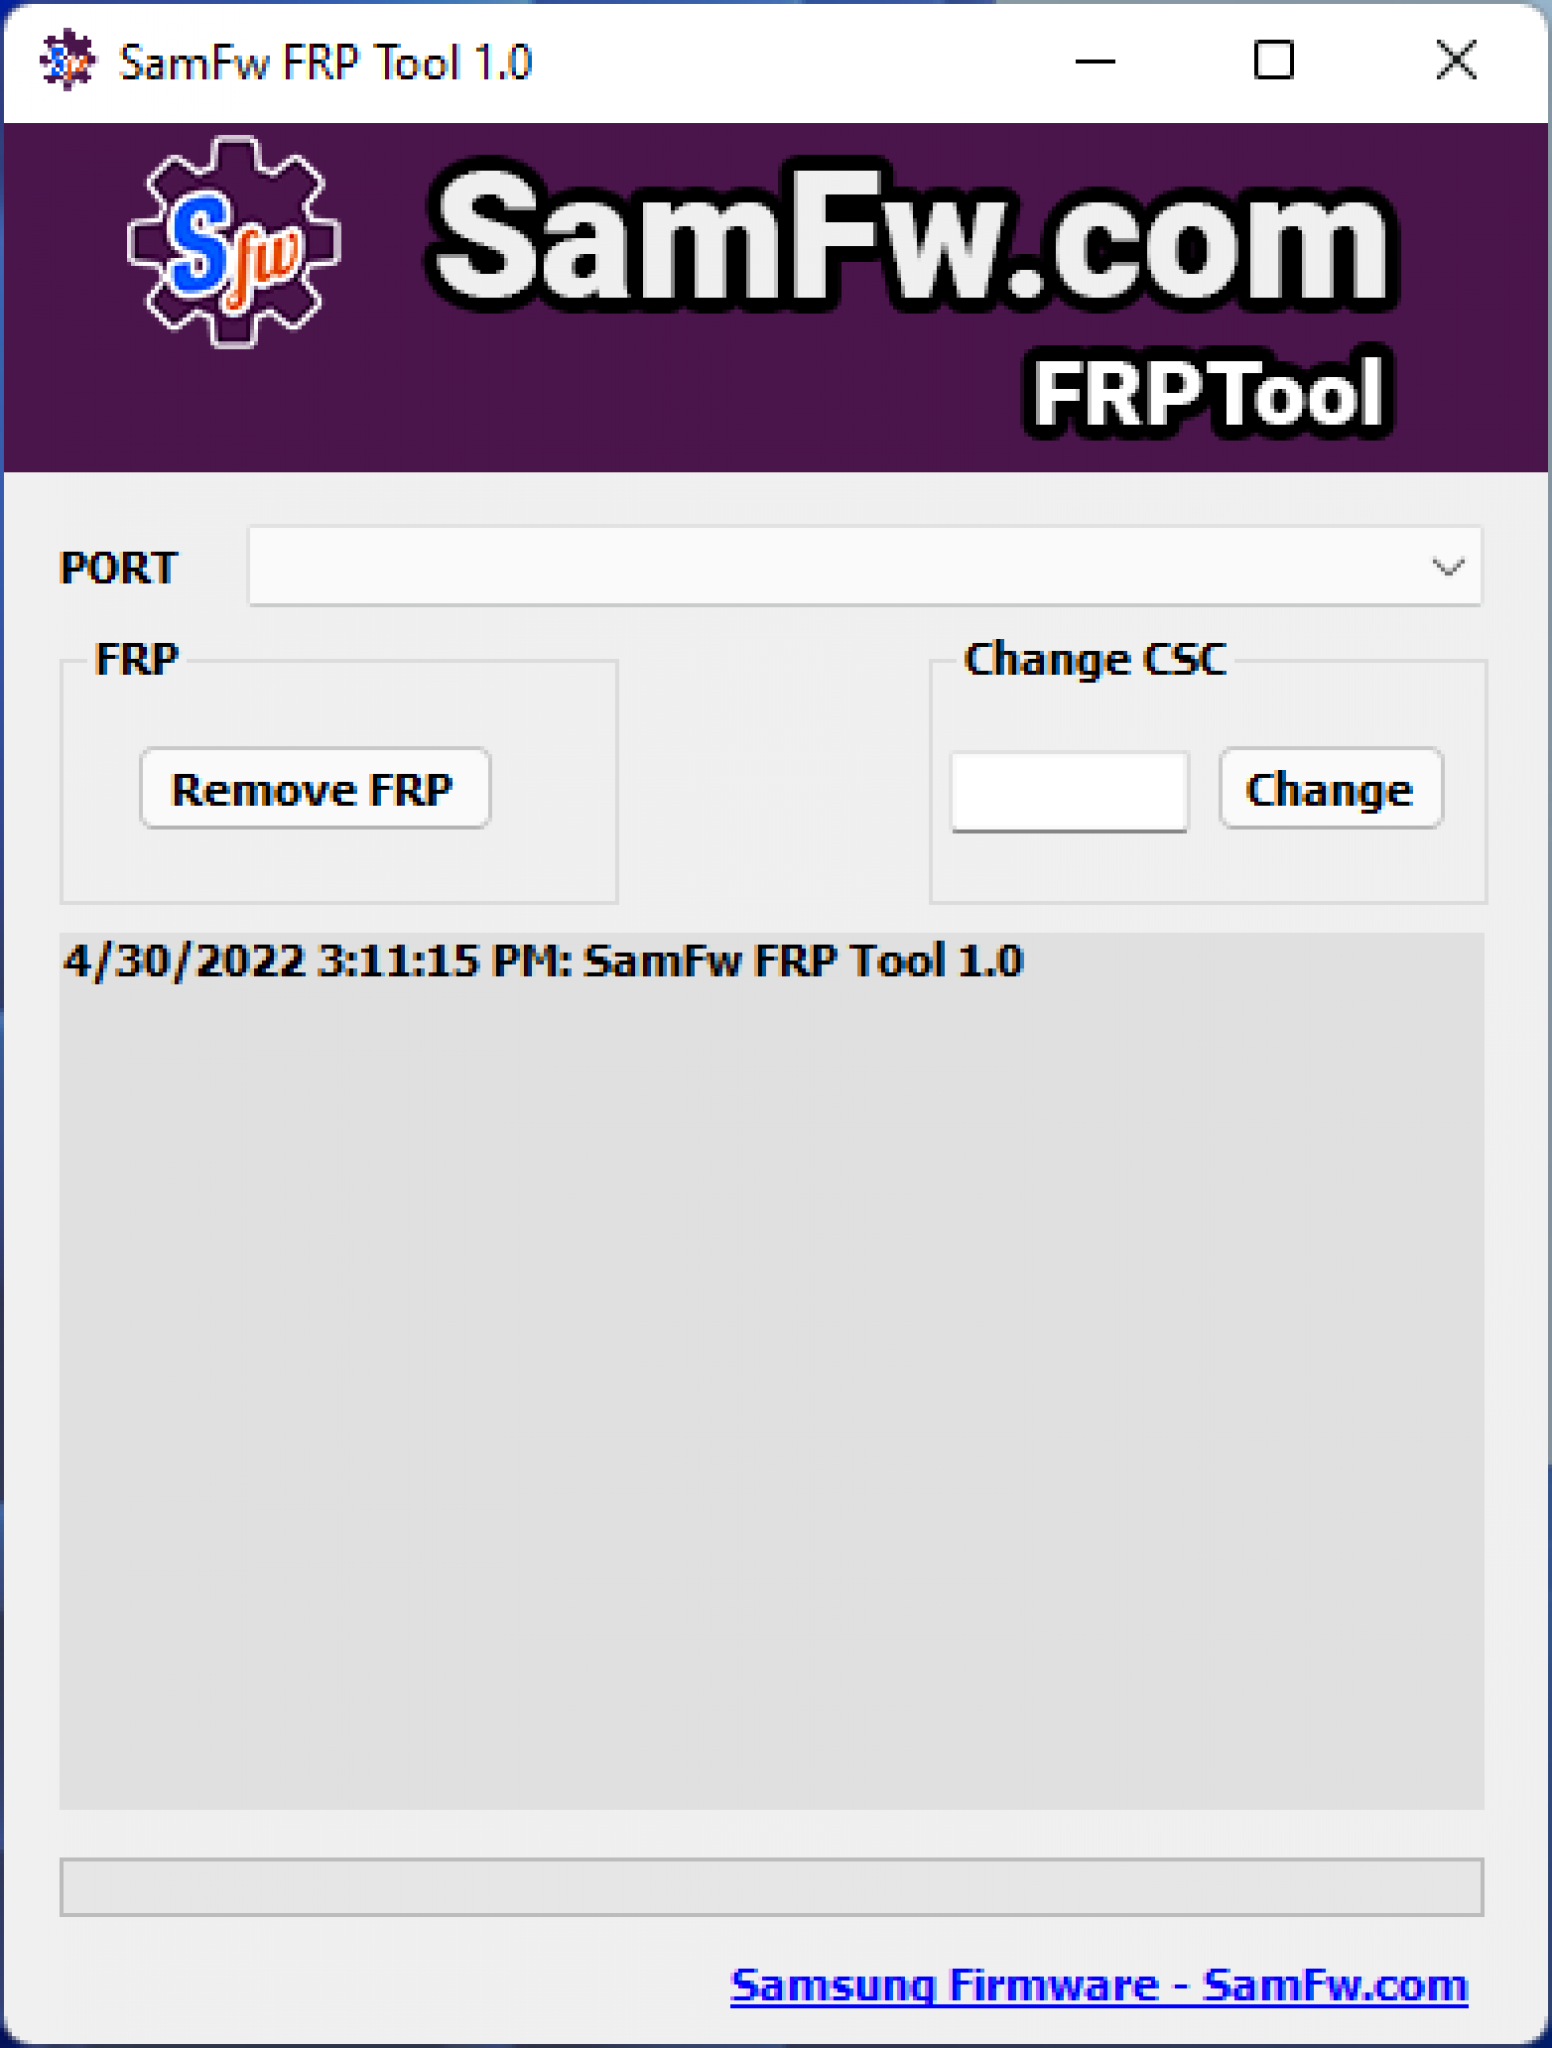 Samfw tool. Samfw FRP. FRP Tool. *#0*# + Samfw FRP Tool.